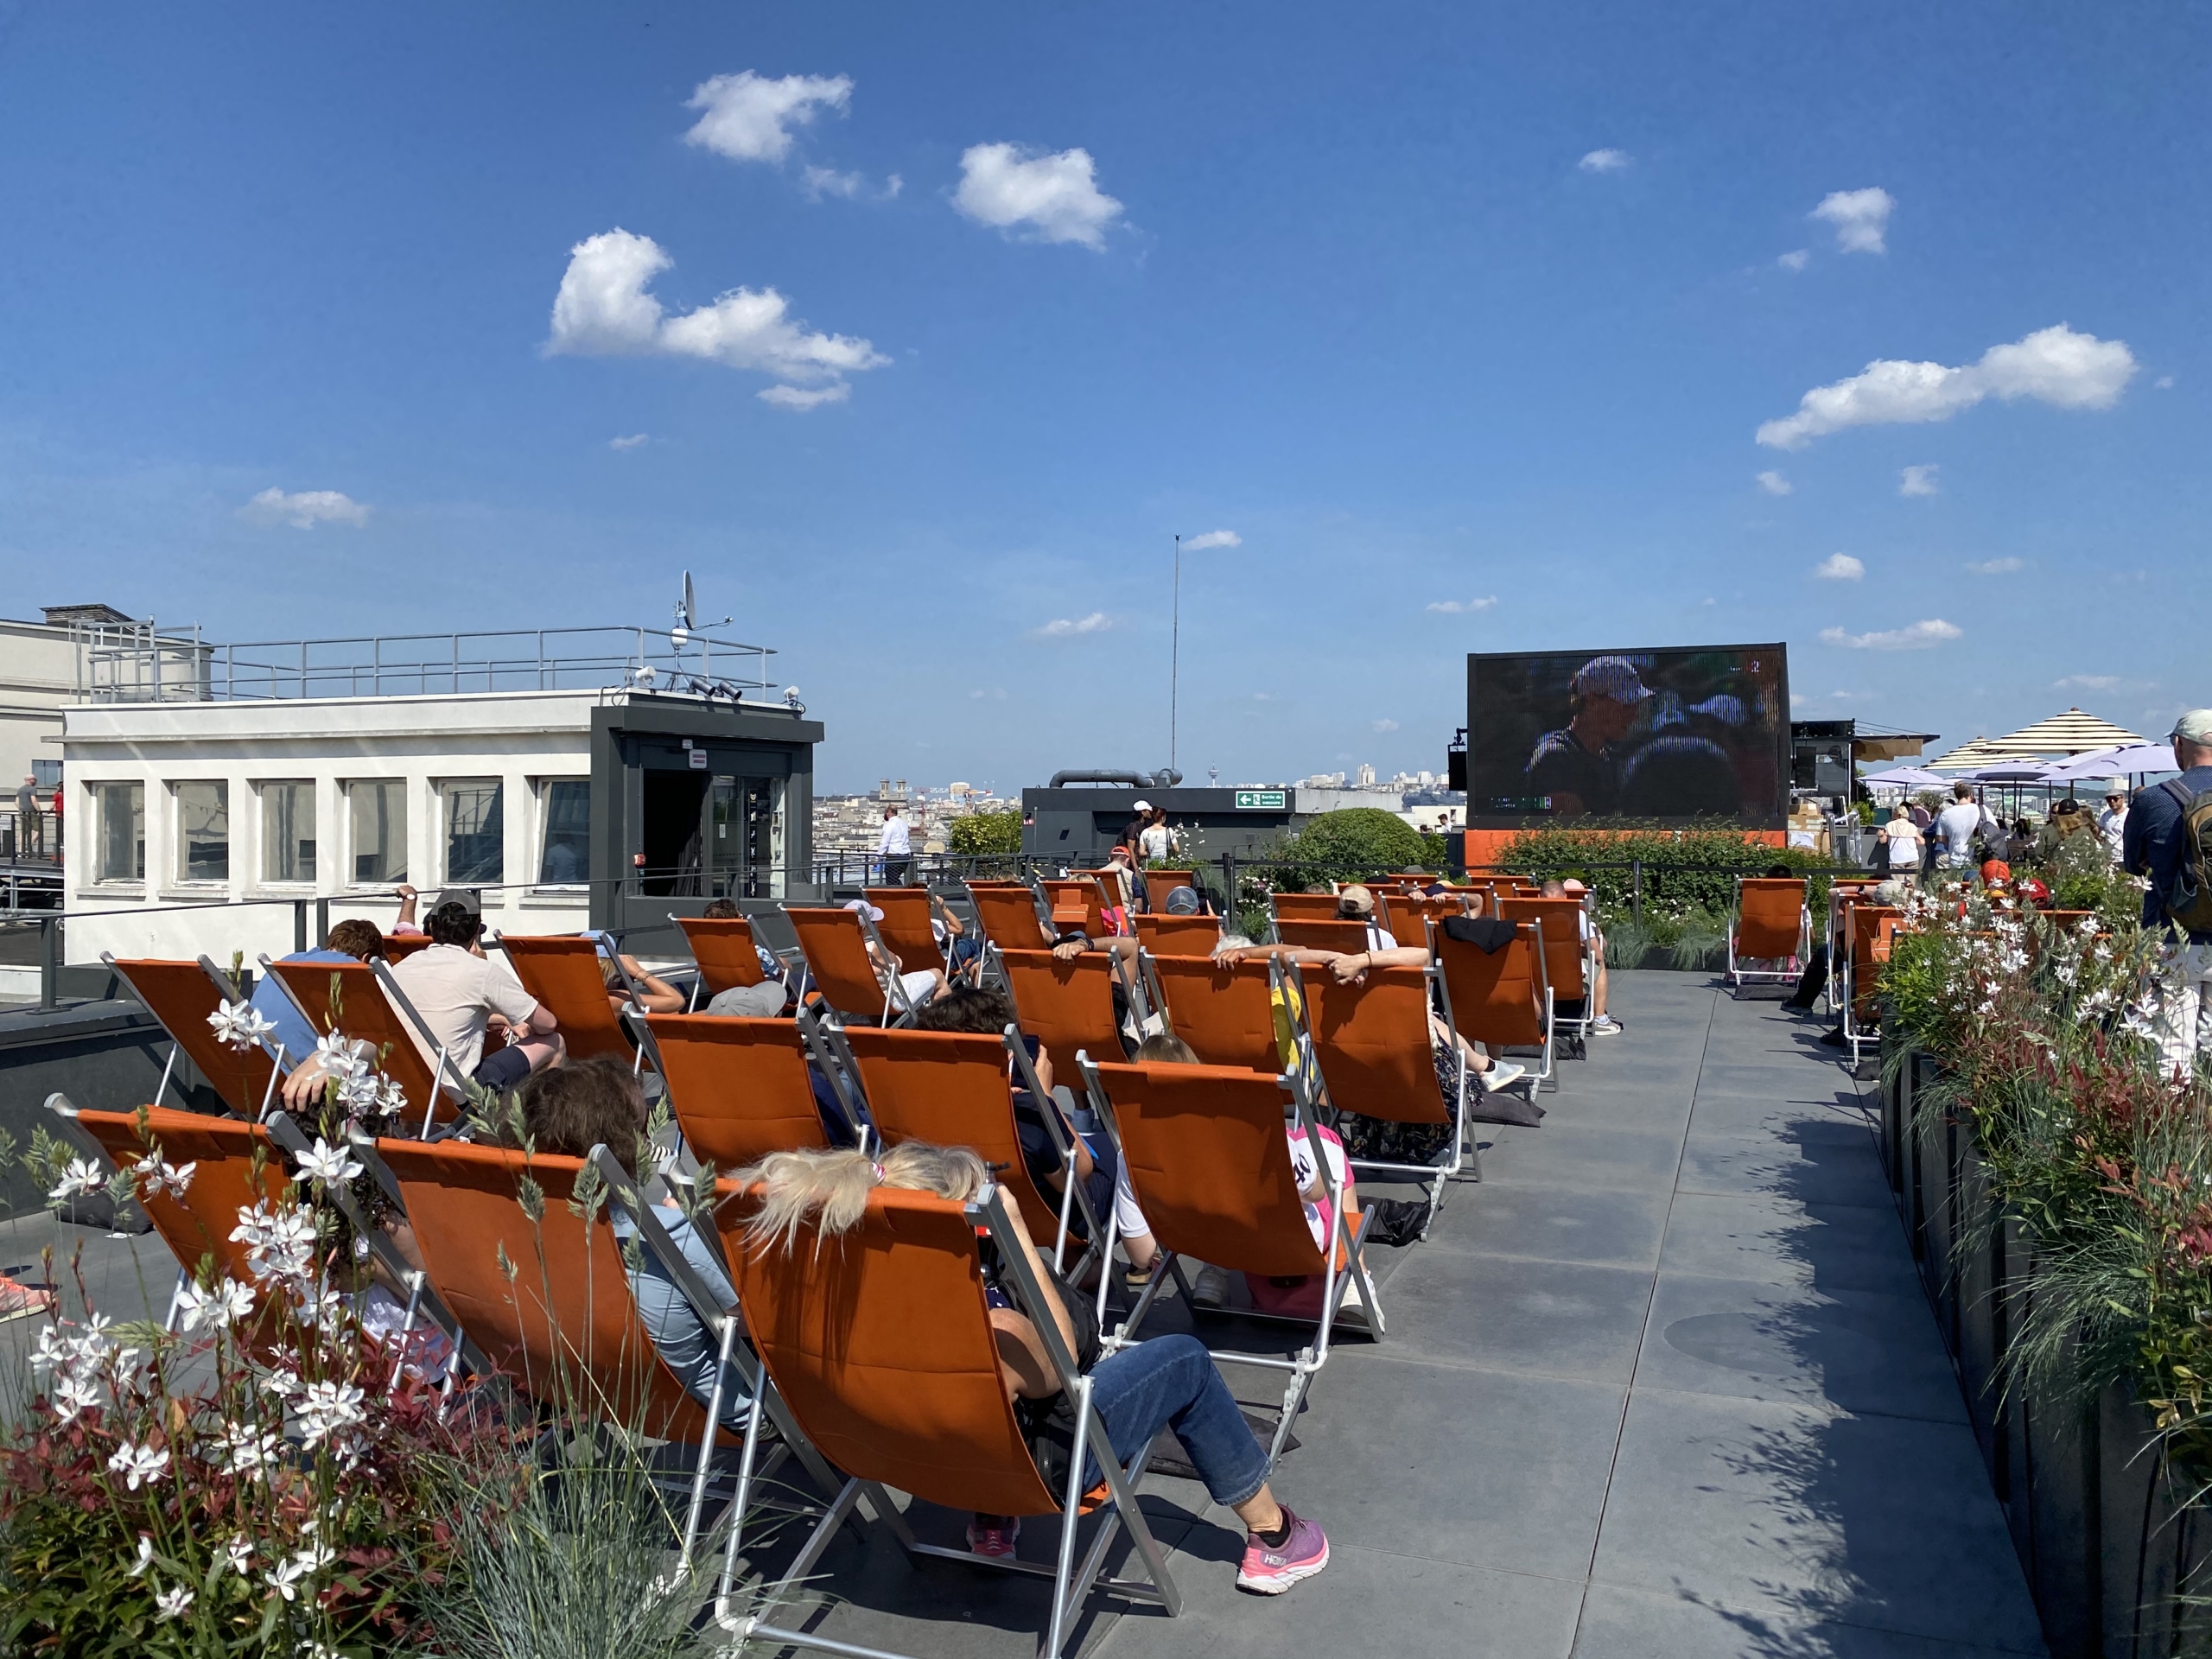 Roland Garros Galerie Lafayette rooftop